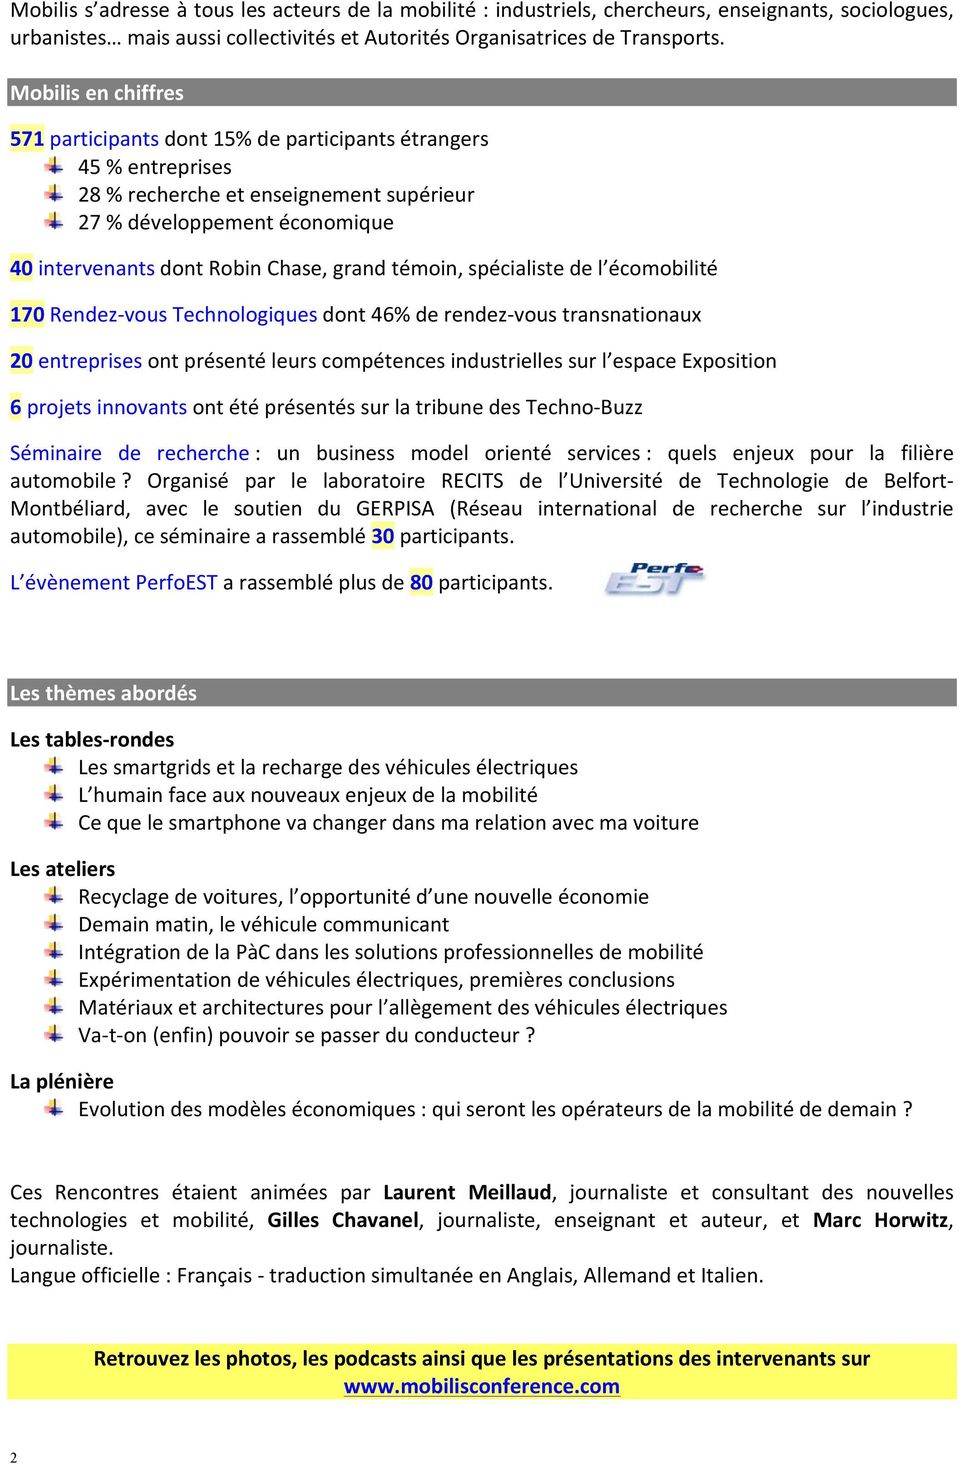 site de rencontre - Traduction en allemand - exemples français | Reverso Context